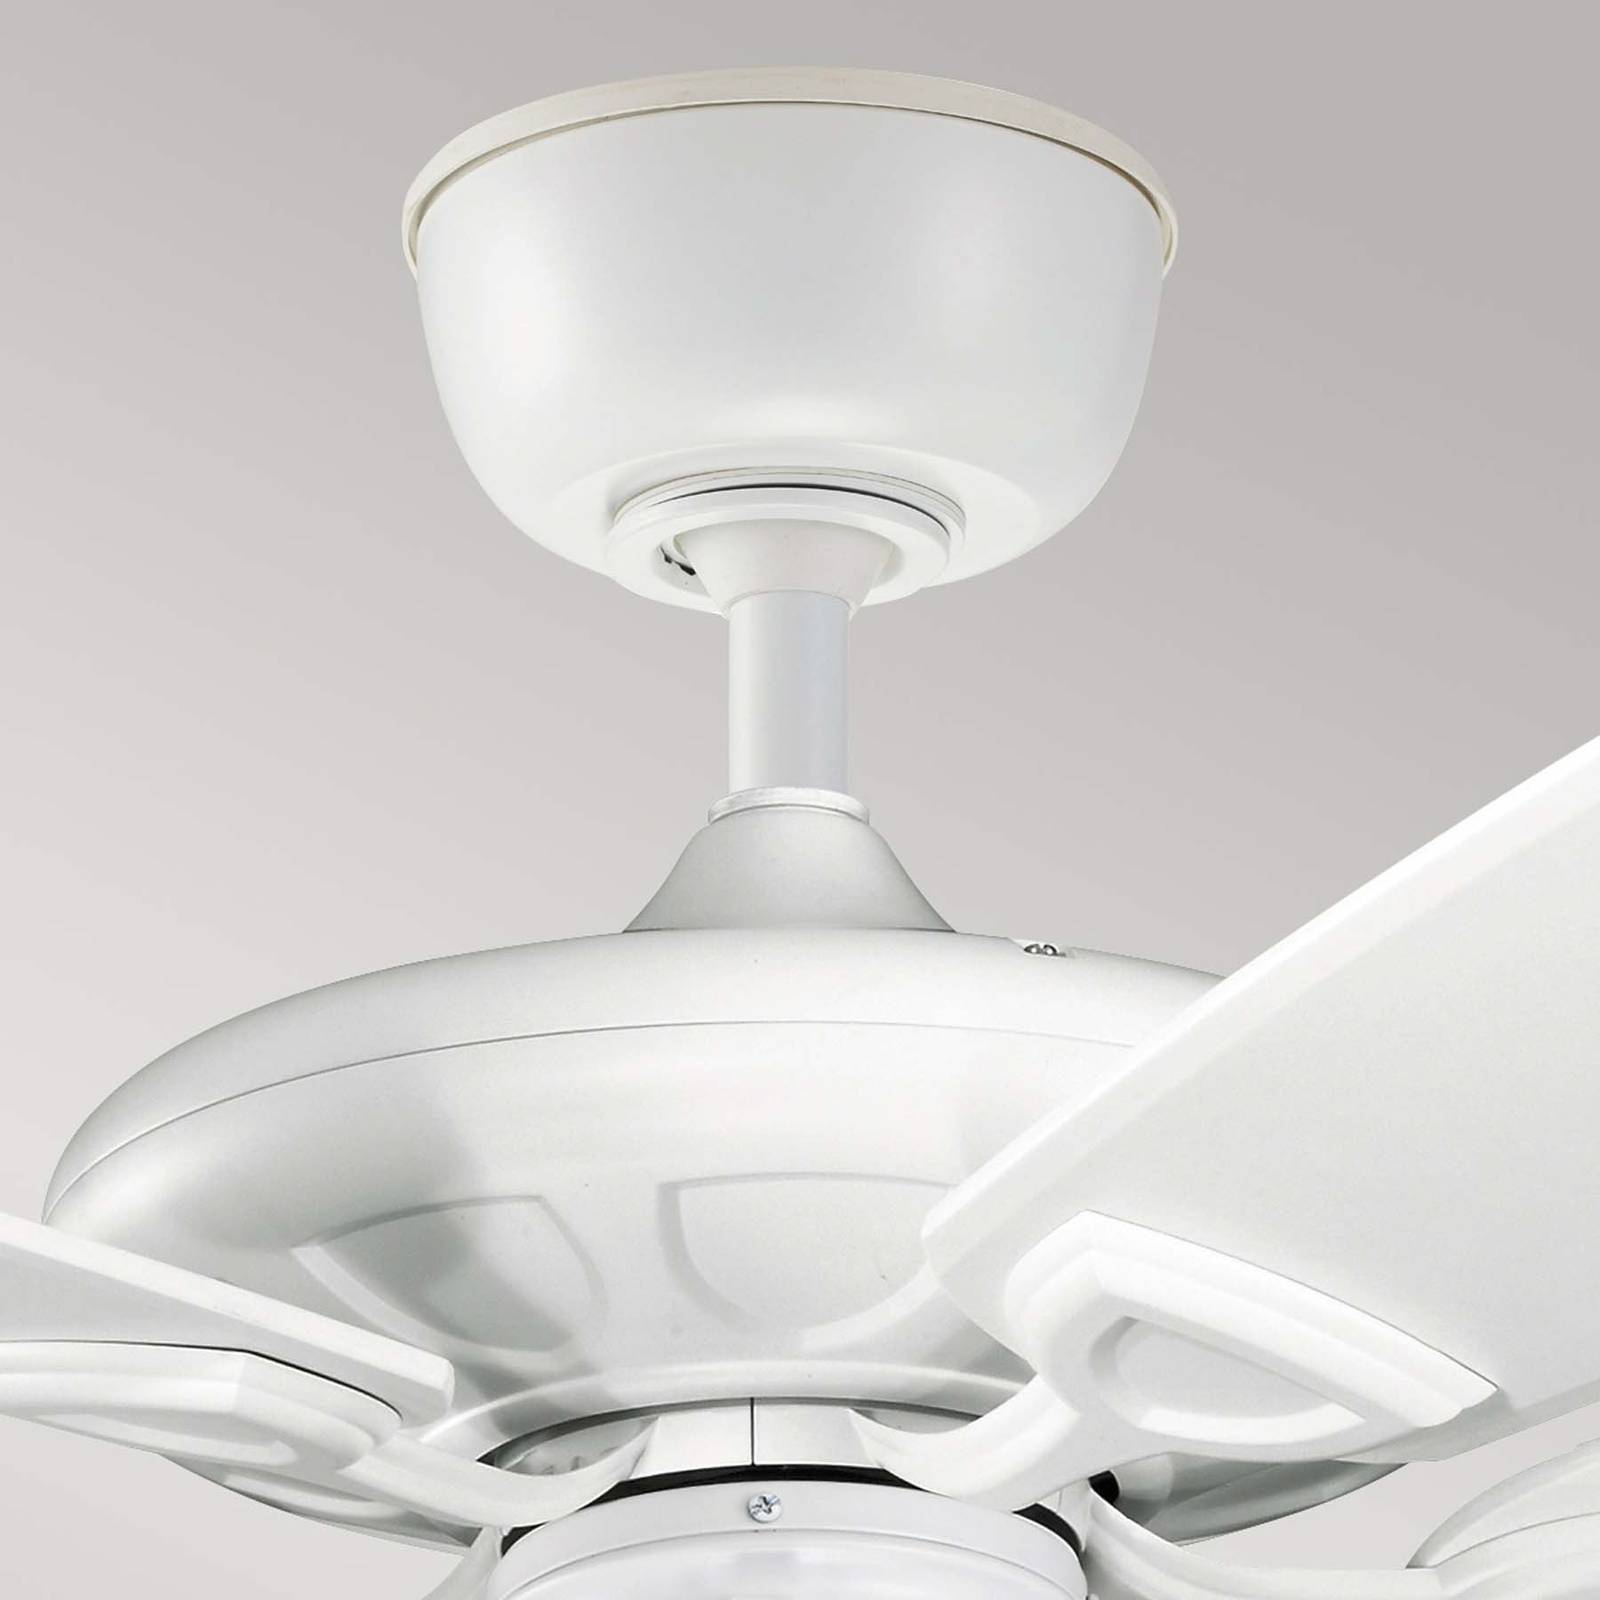 Image of KICHLER Ventilateur de plafond Kevlar 60 IP44, blanc, Ø 152 cm 5024005444916